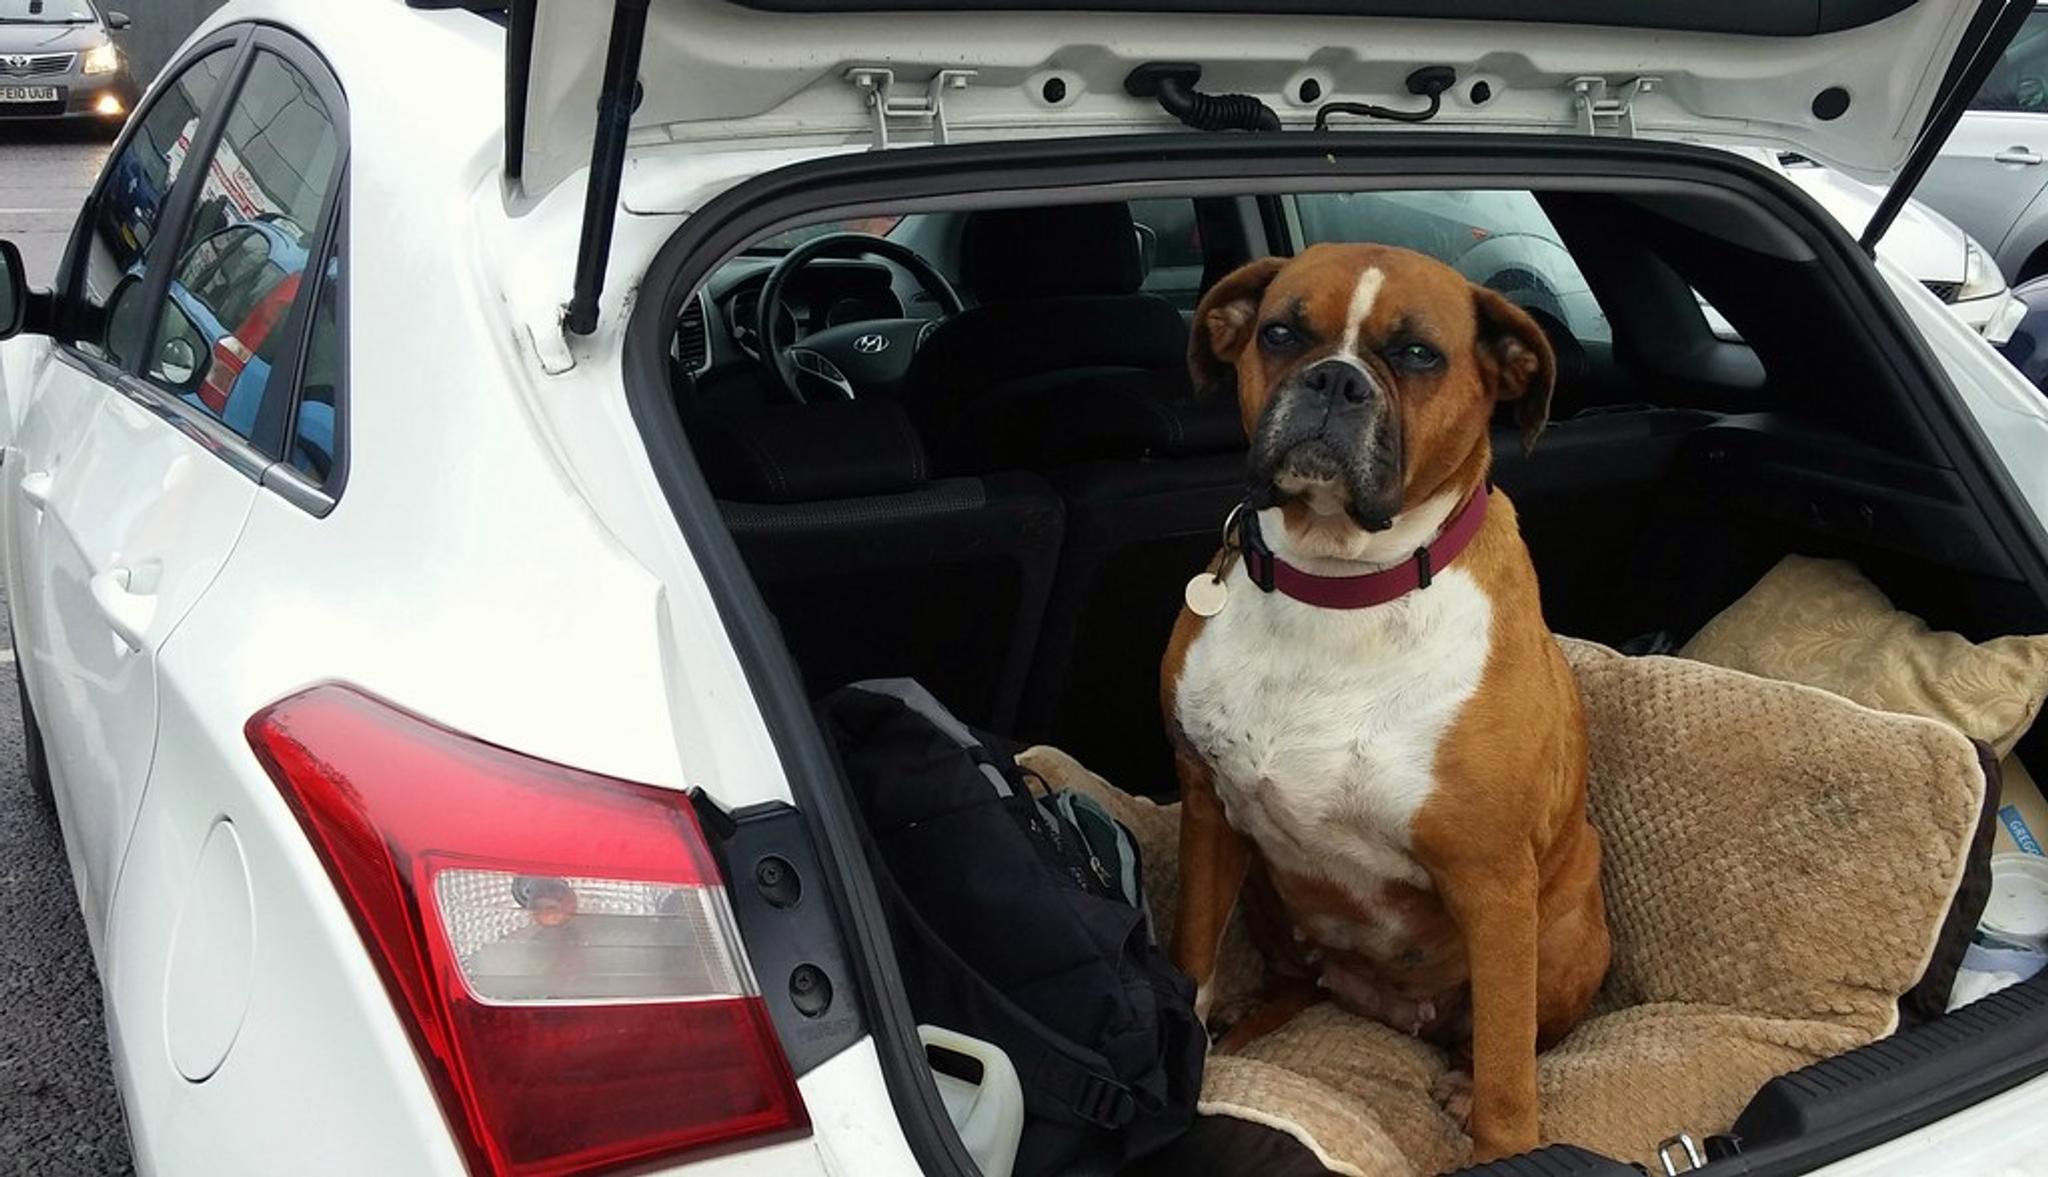 a dog in the boot of the car, car boot, dog in a car, dog in a trunk, car trunk, vehicle boot